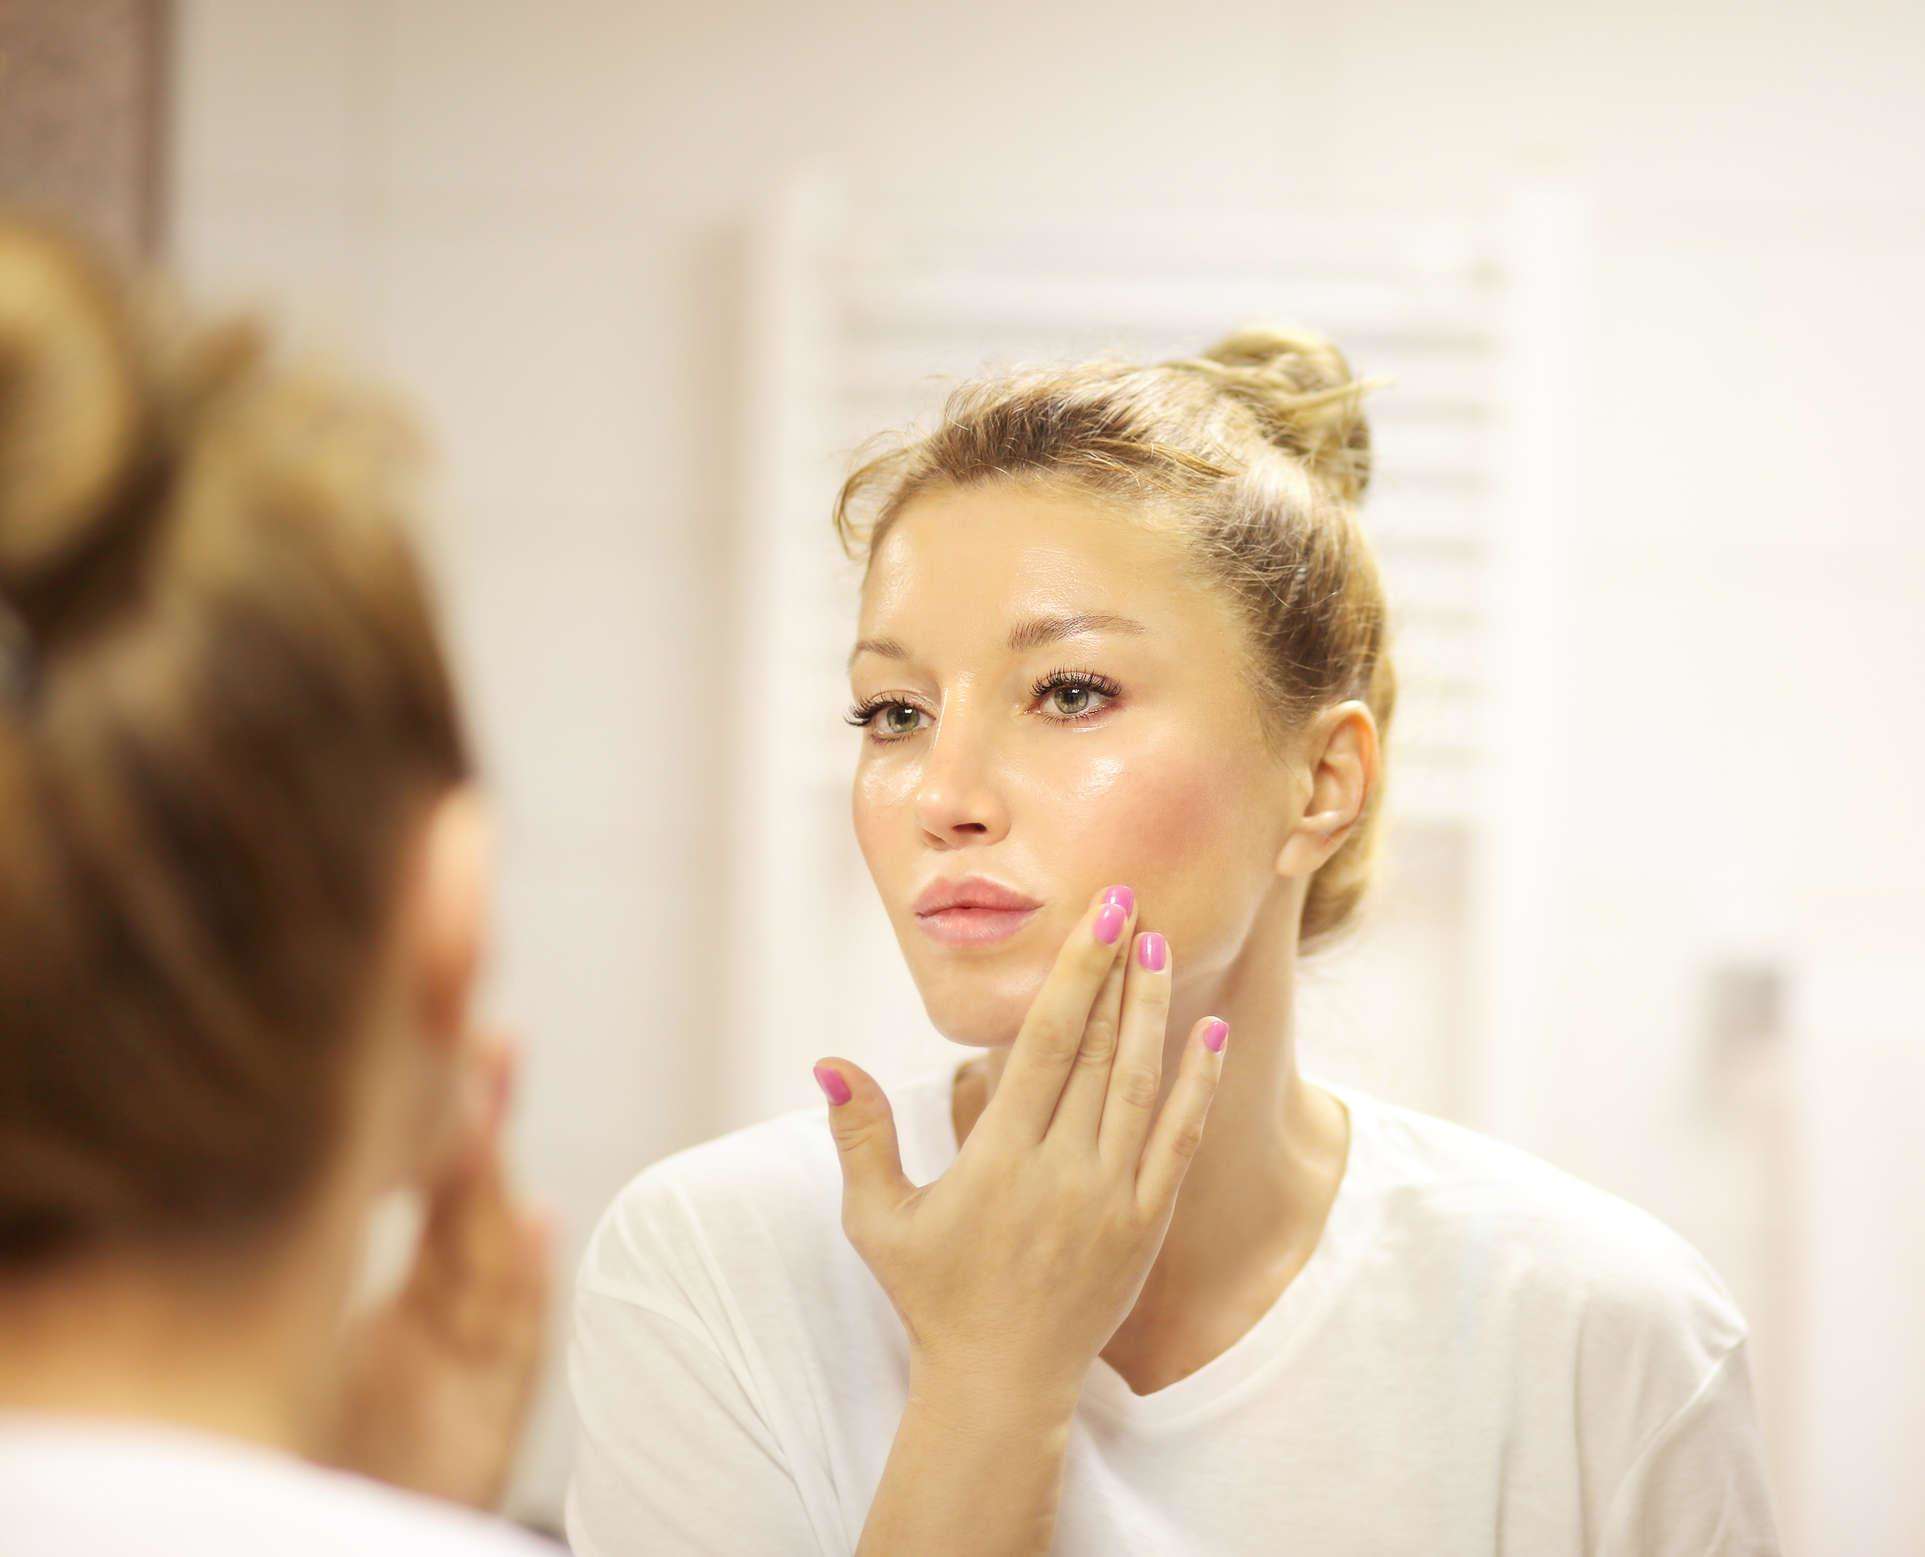 Skin Care: इन चीजों को गलती से भी चेहरे पर न लगाएं, नहीं तो त्वचा को नुकसान हो सकता है